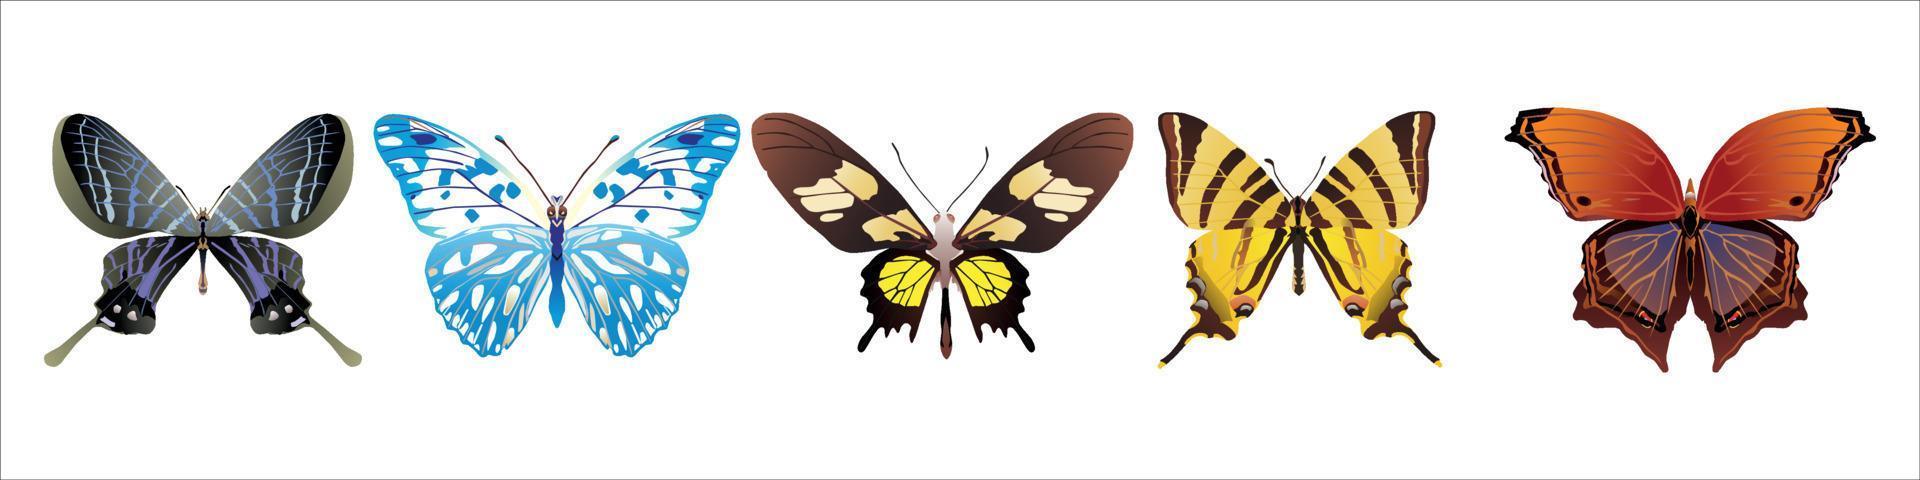 Reihe von niedlichen Cartoon-Schmetterlingen Vektor